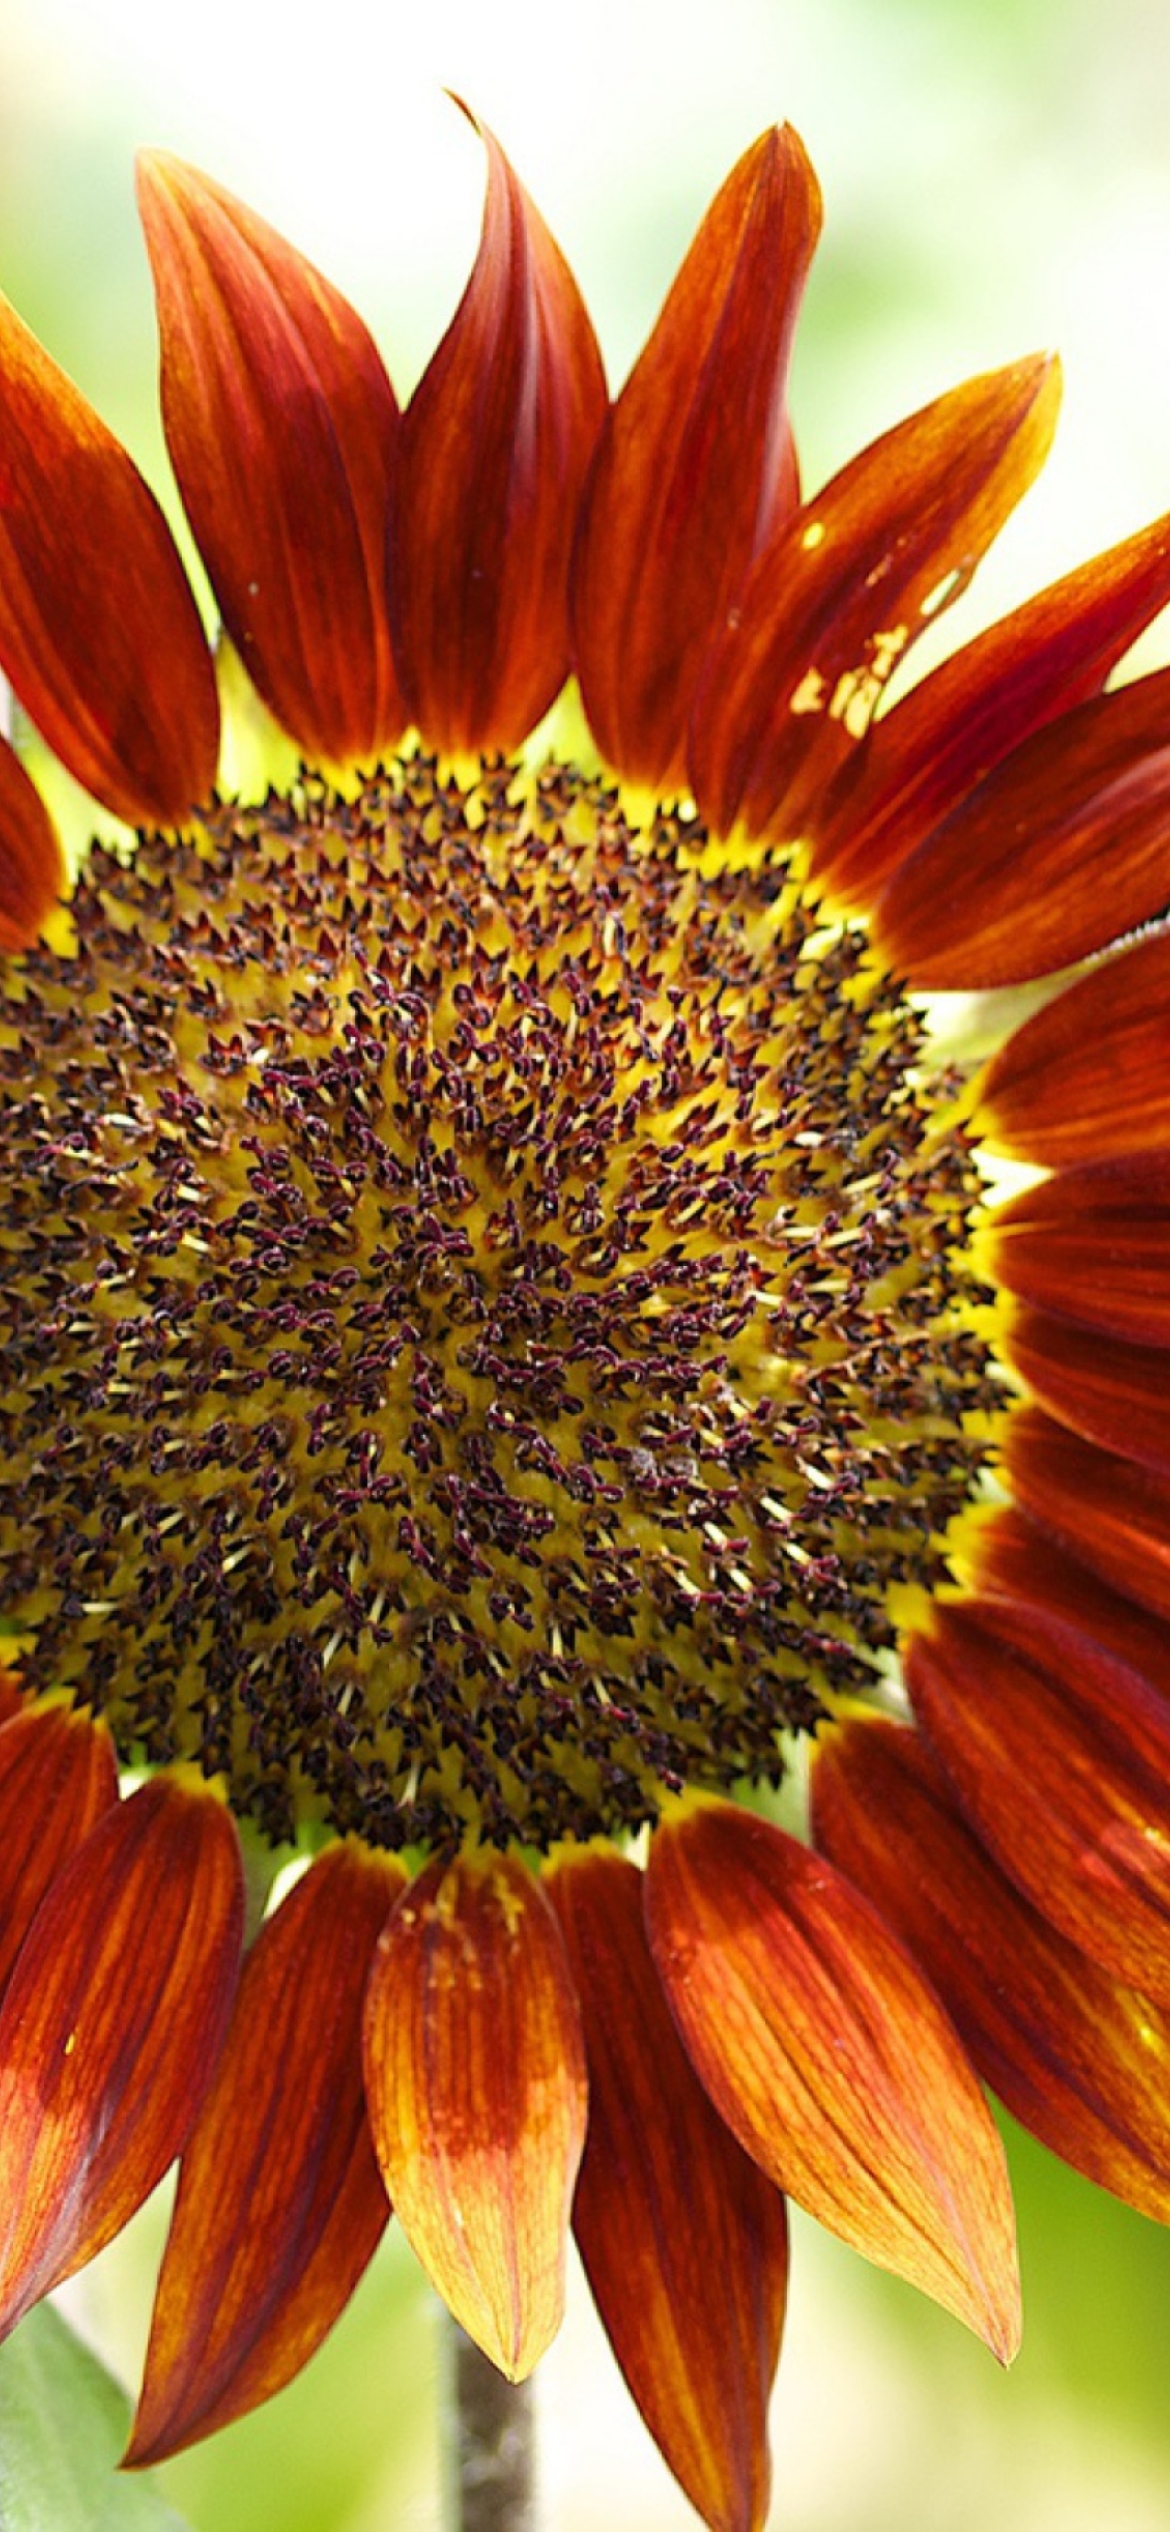 Red Sunflower wallpaper 1170x2532